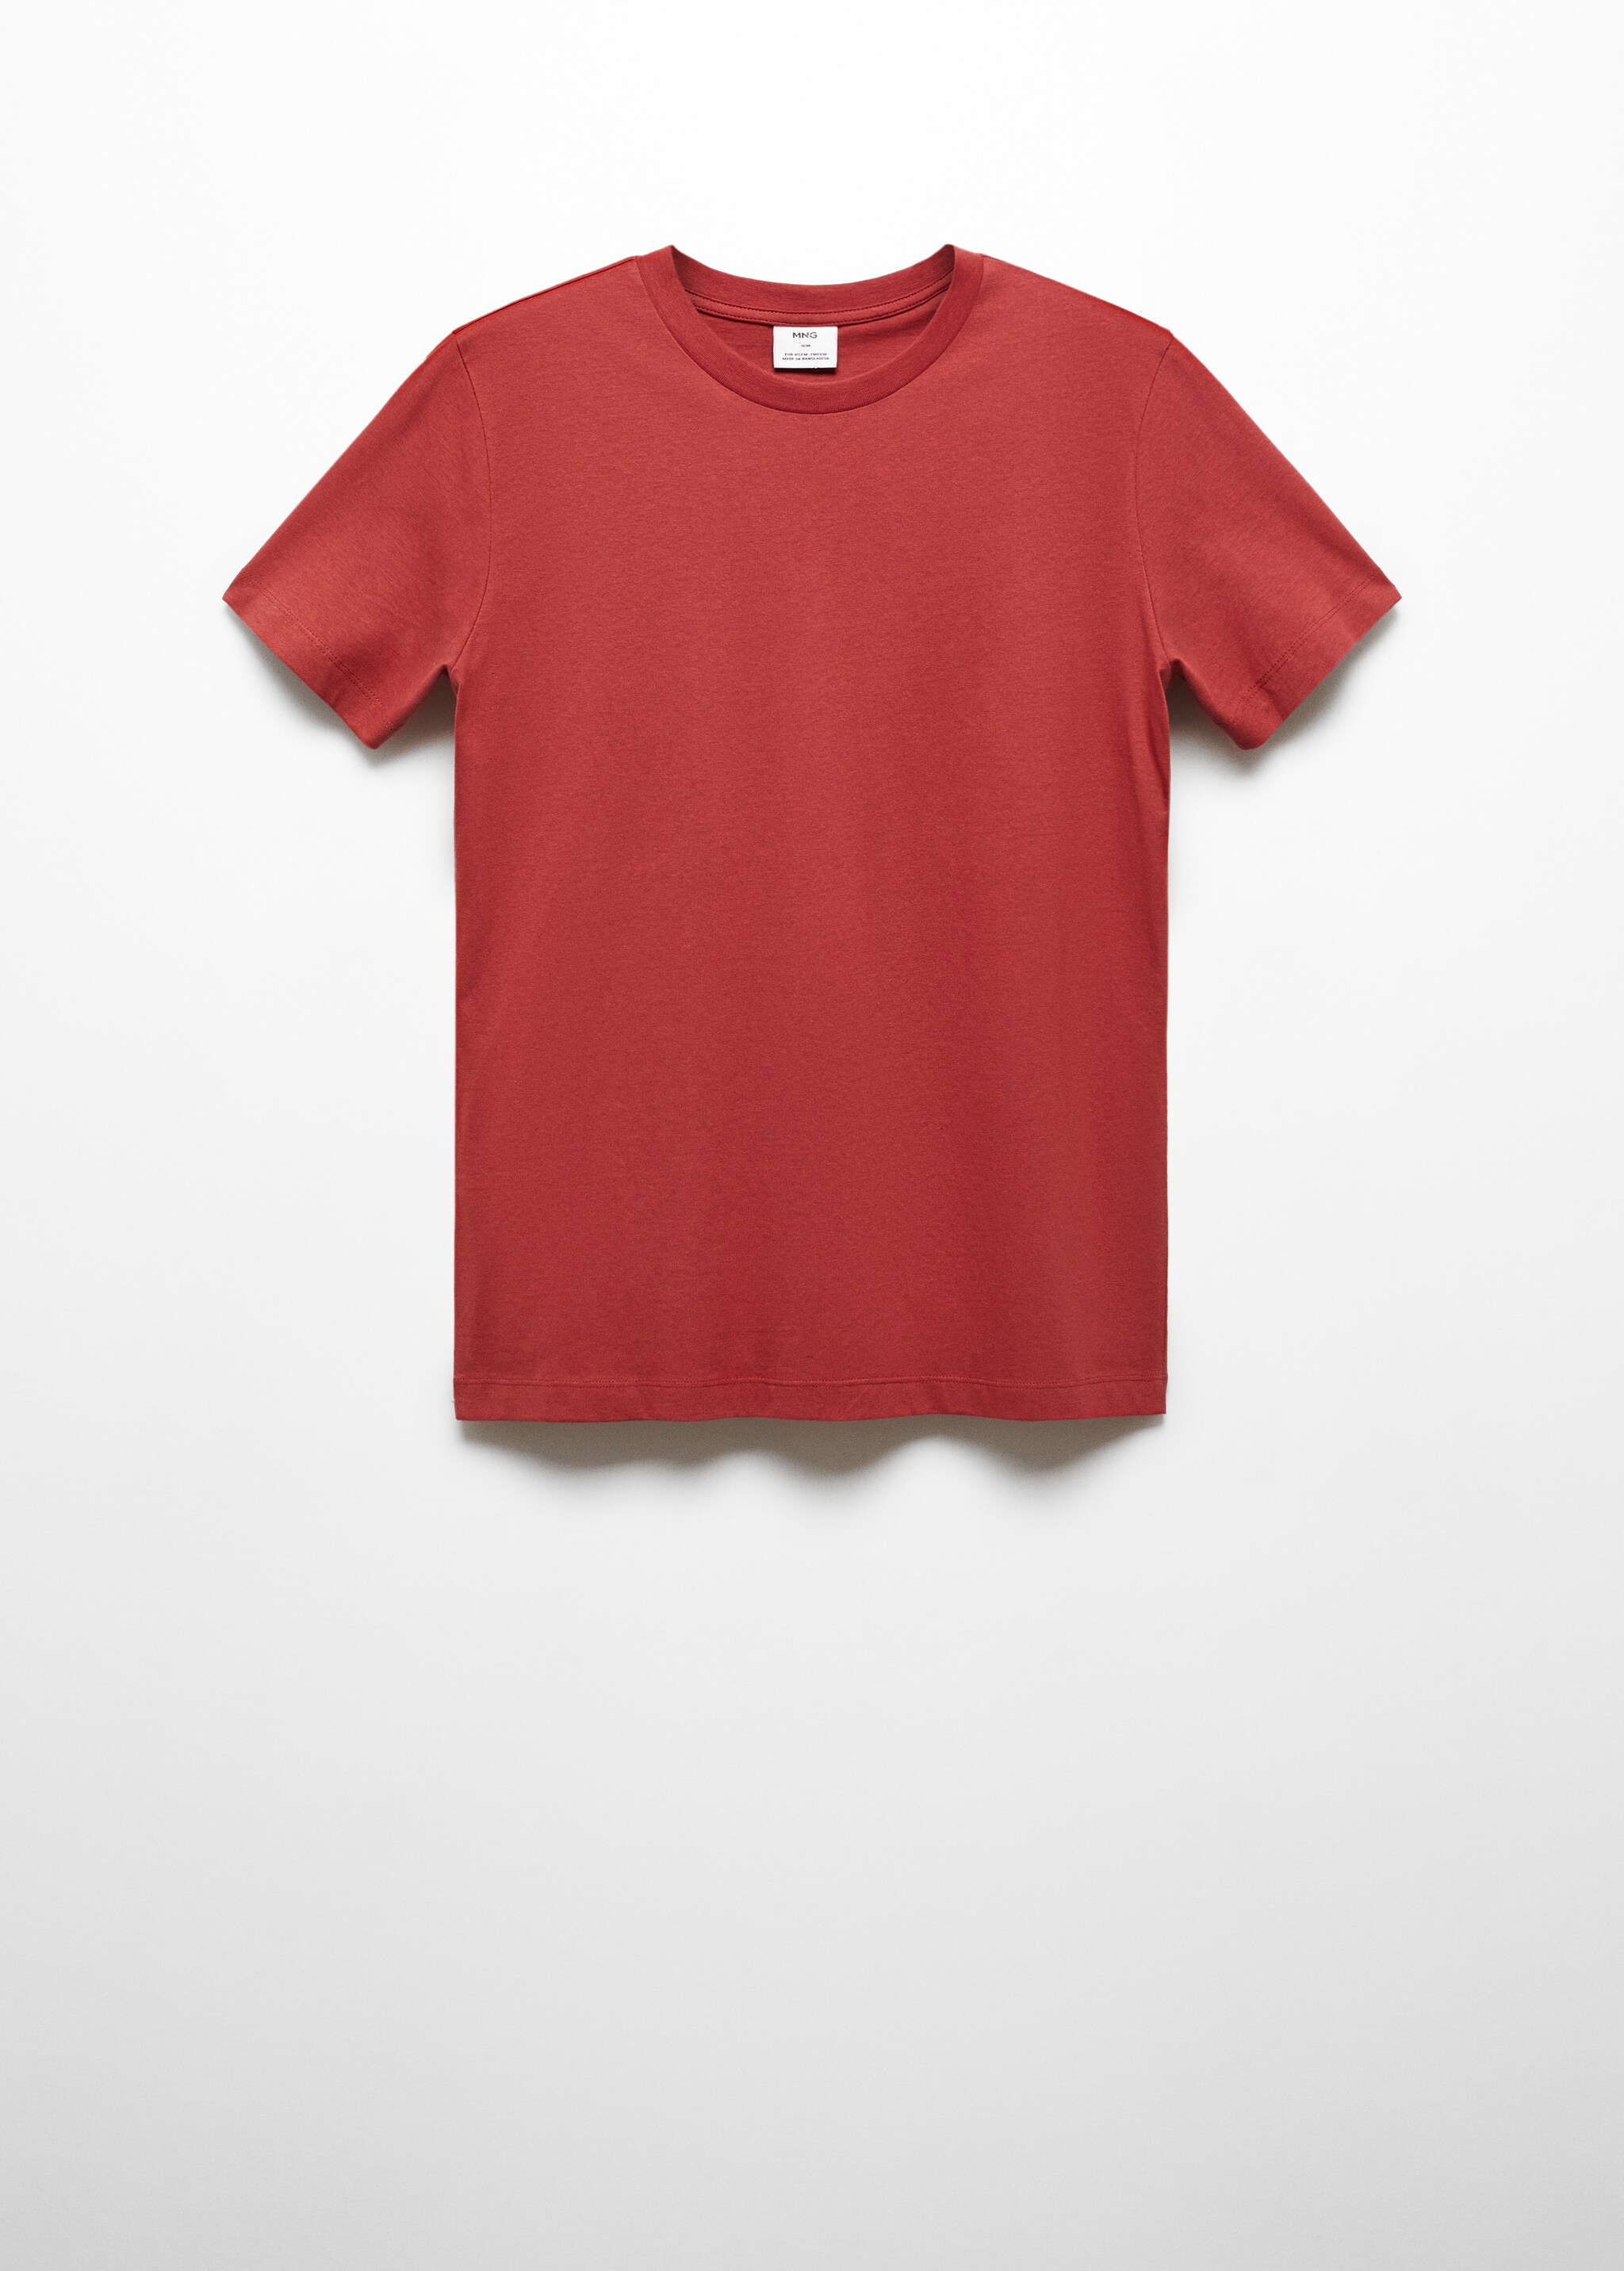 Camiseta slim fit 100% algodón - Artículo sin modelo